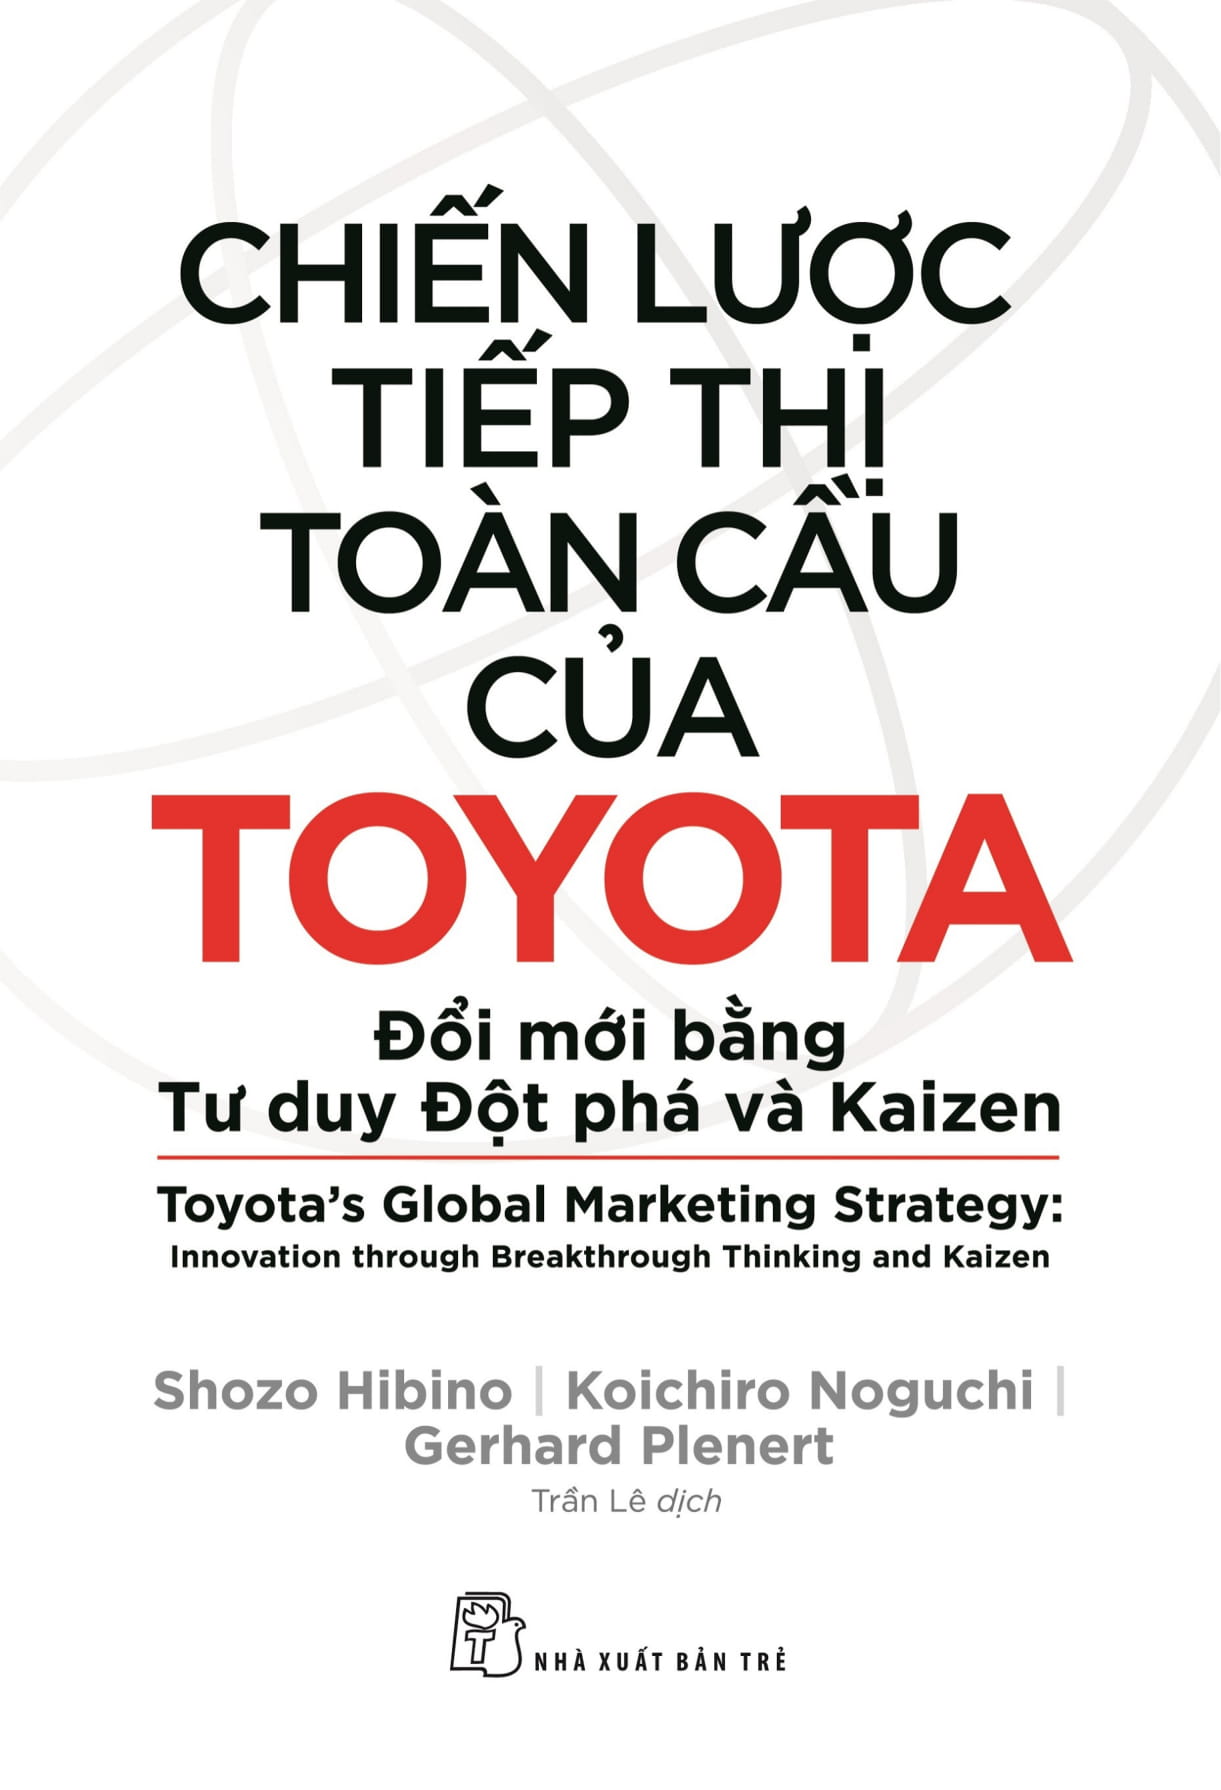 Chiến Lược Tiếp Thị Toàn Cầu Của Toyota: Đổi Mới Bằng Tư Duy Đột Phá Và Kaizen 2